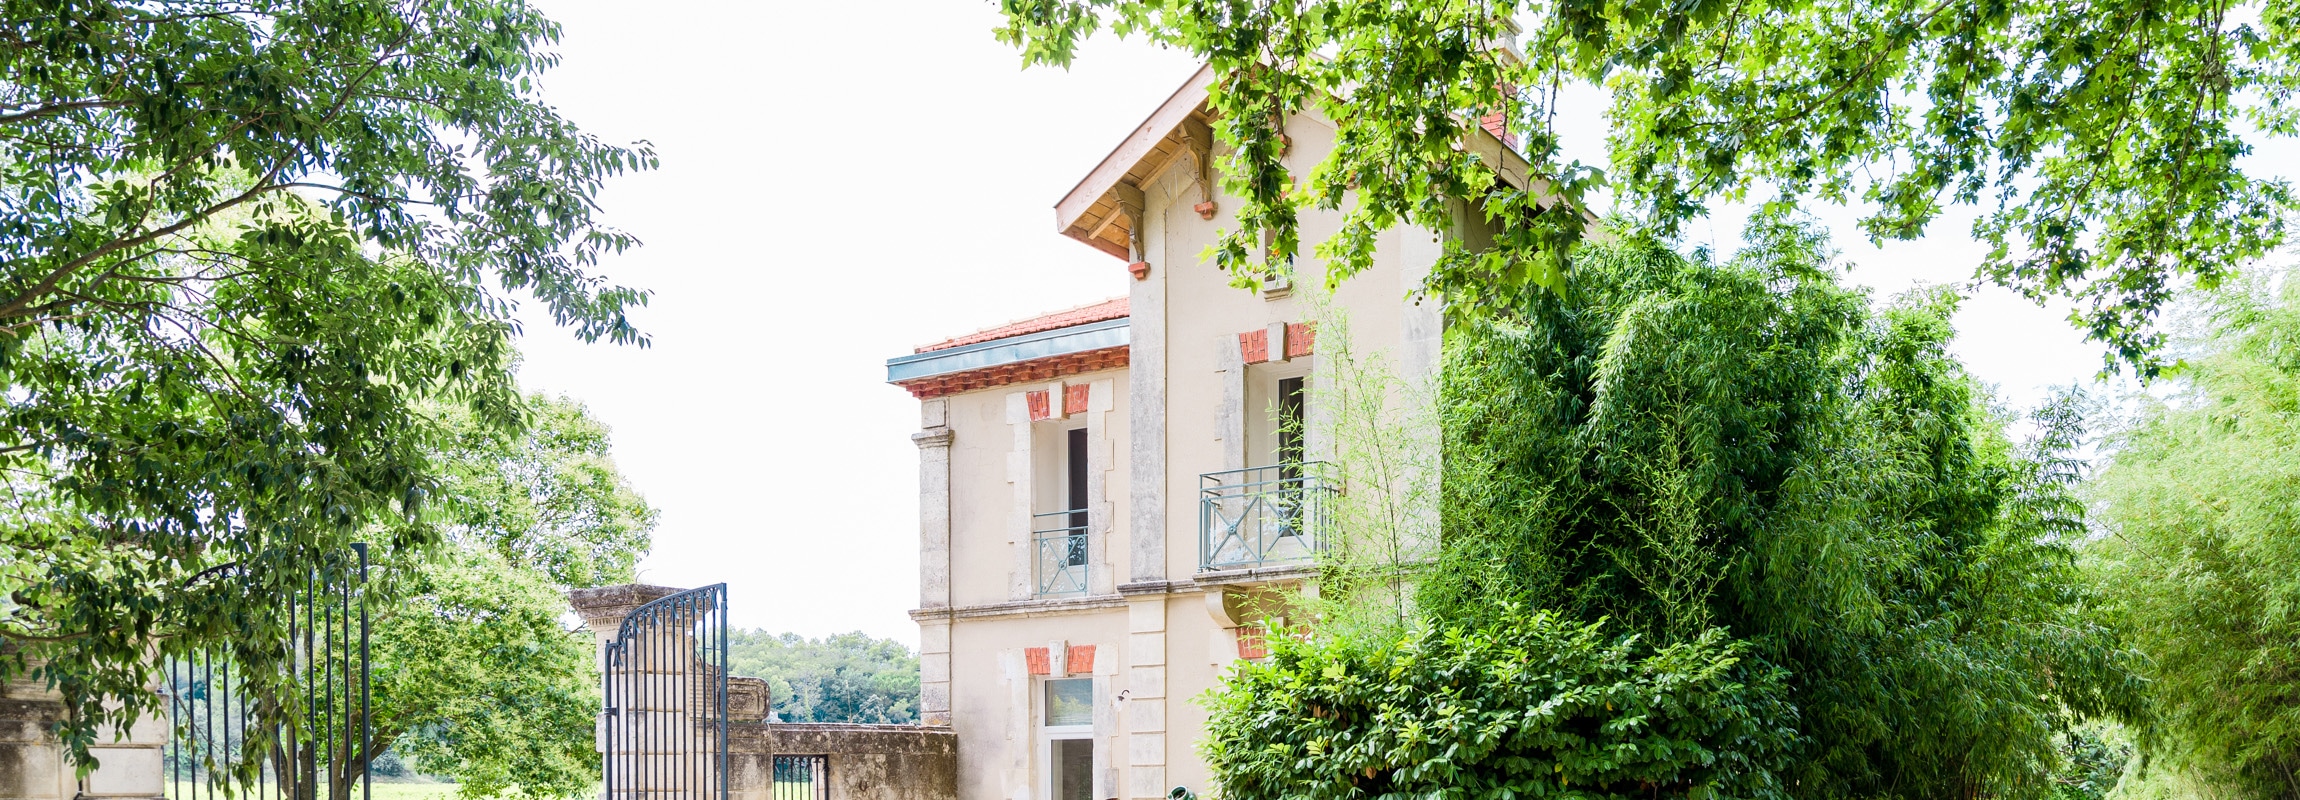 Château de Montcaud, Hôtel Provence, Maison de vacances. Meublé et équipé, idéale pour des vacances en famille. Cuisine, terrasse et barbecue.